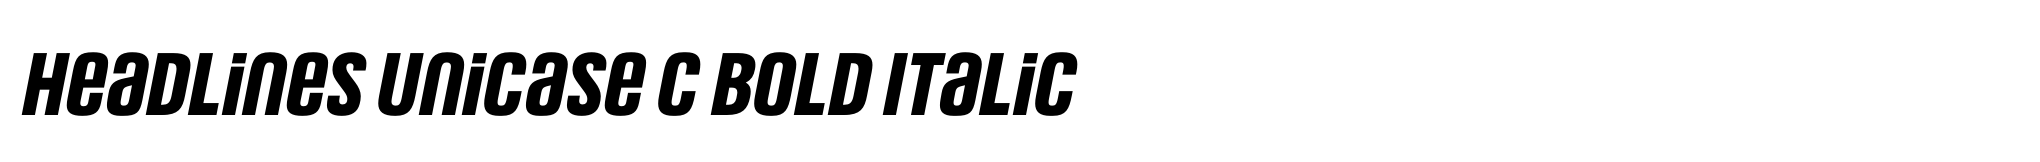 Headlines Unicase C Bold Italic image